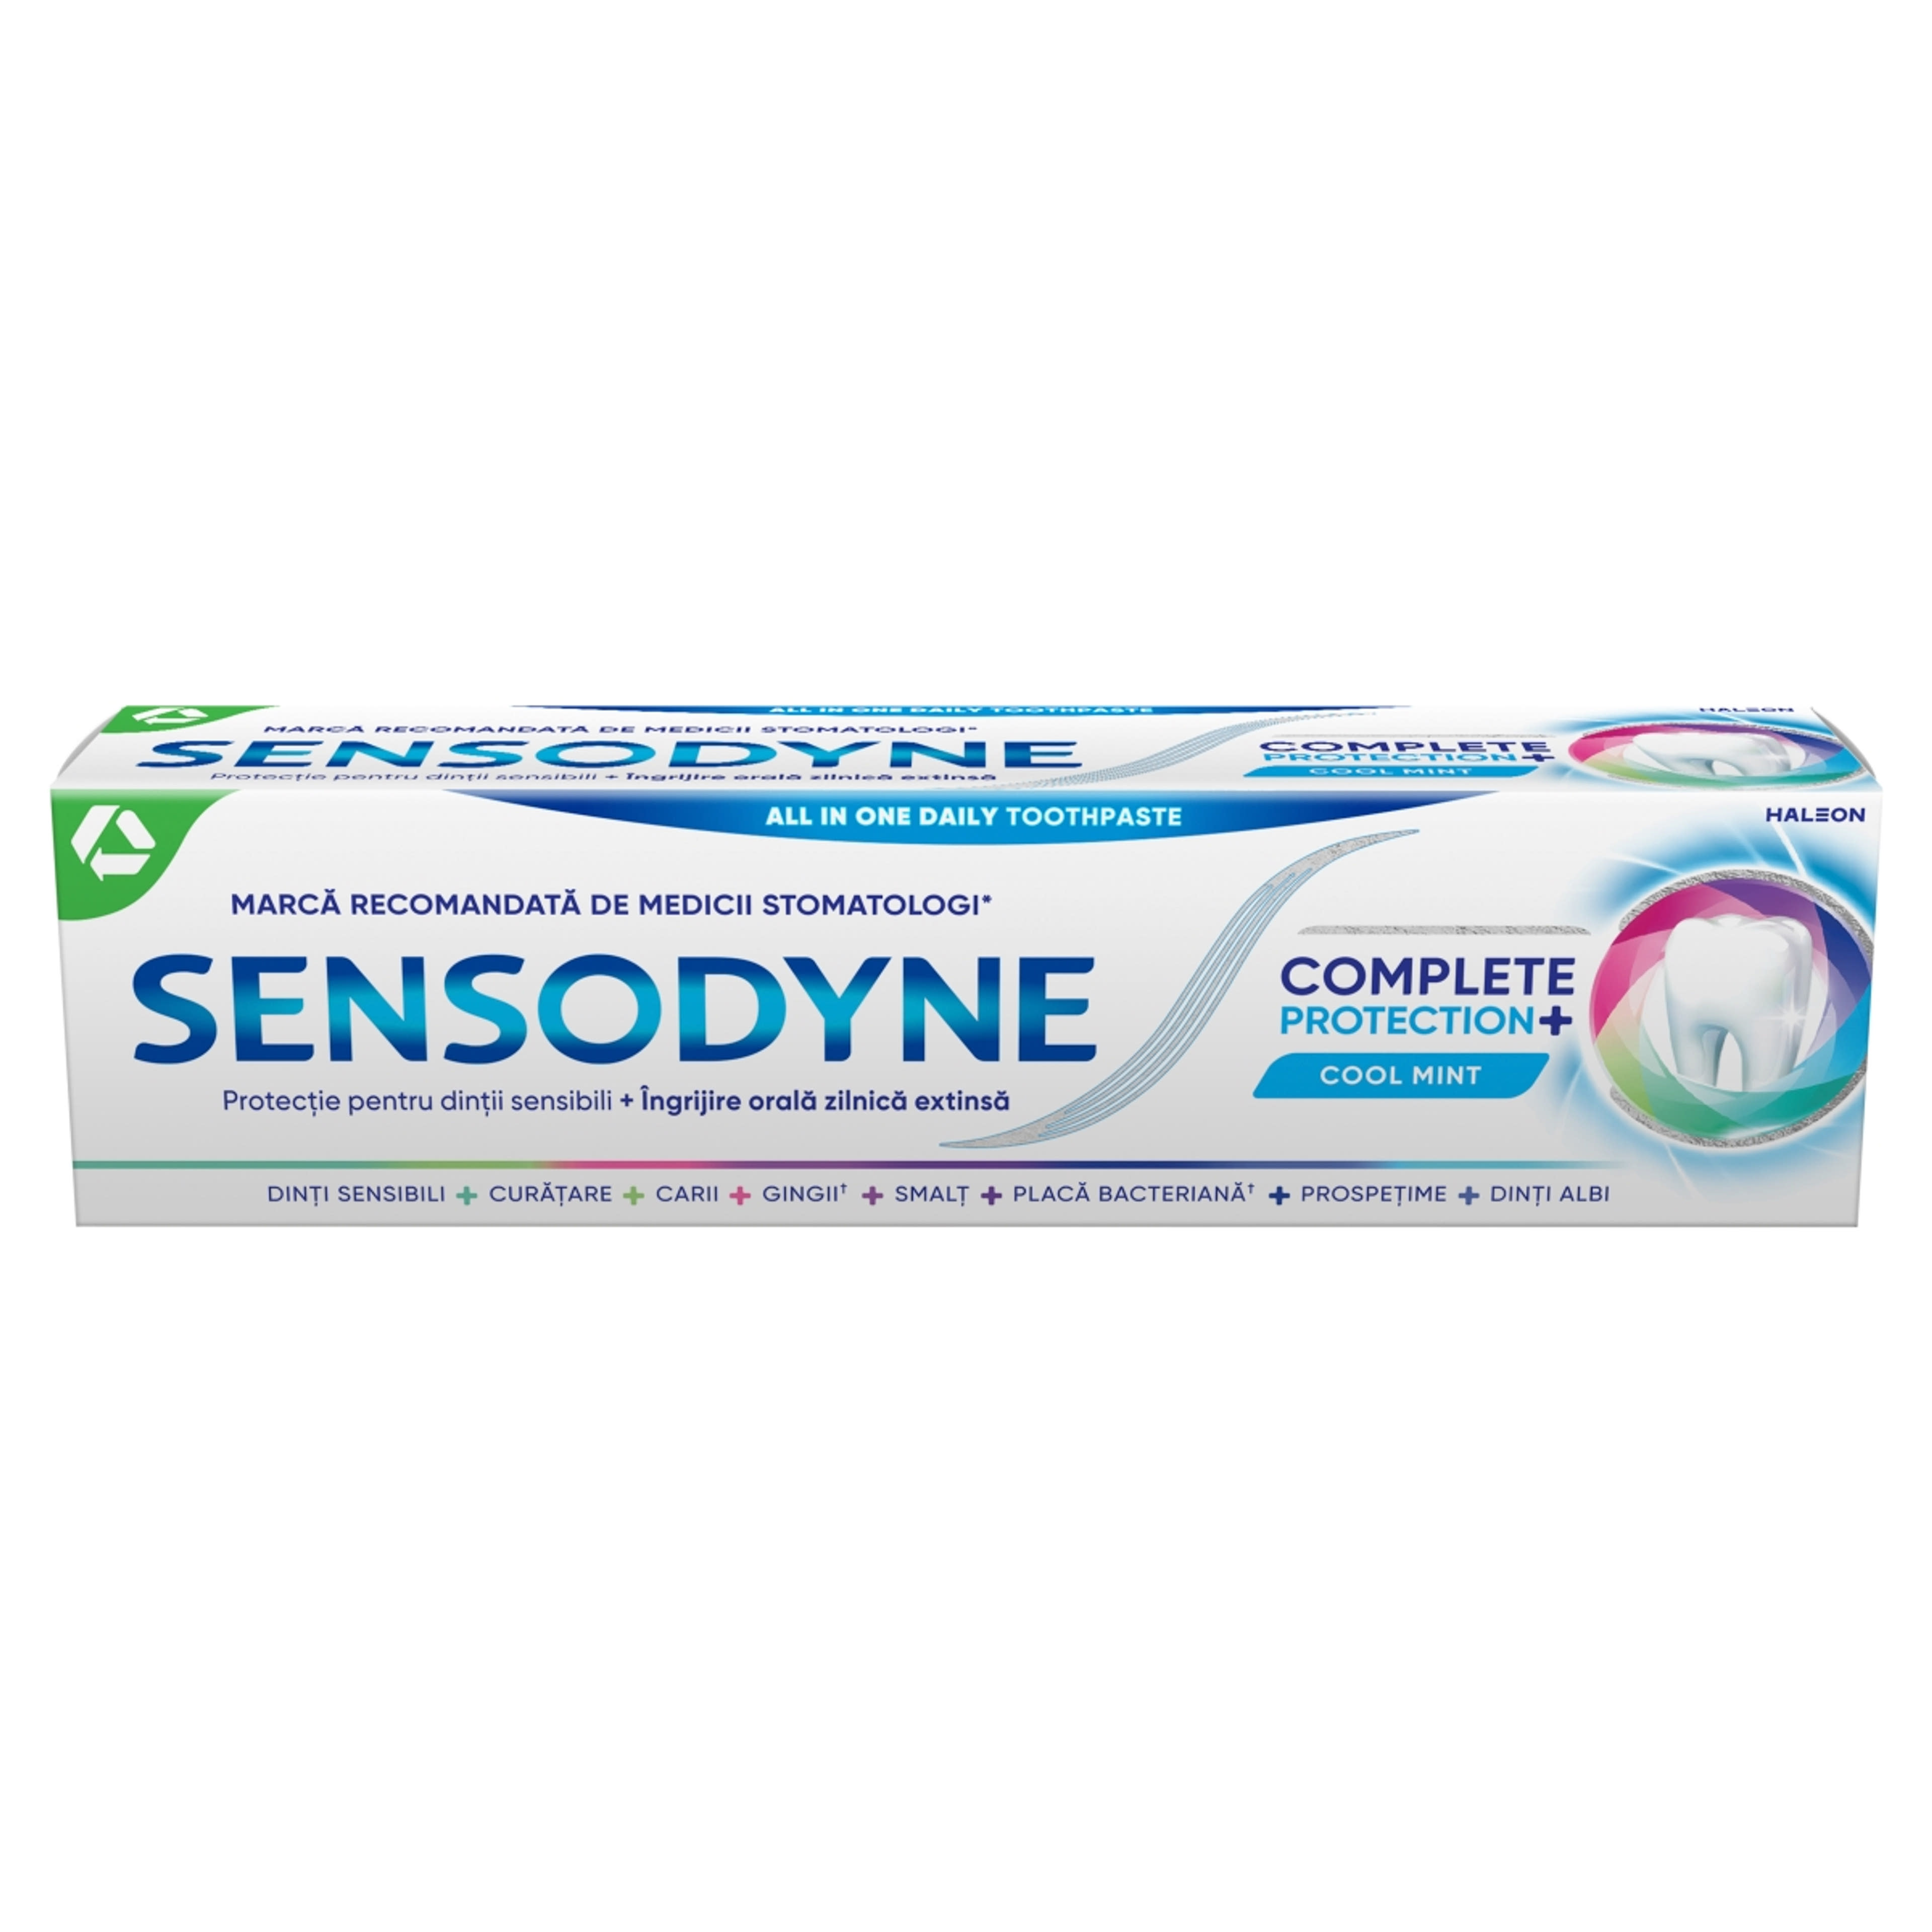 Sensodyne Complete Protection fogkrém - 75 ml